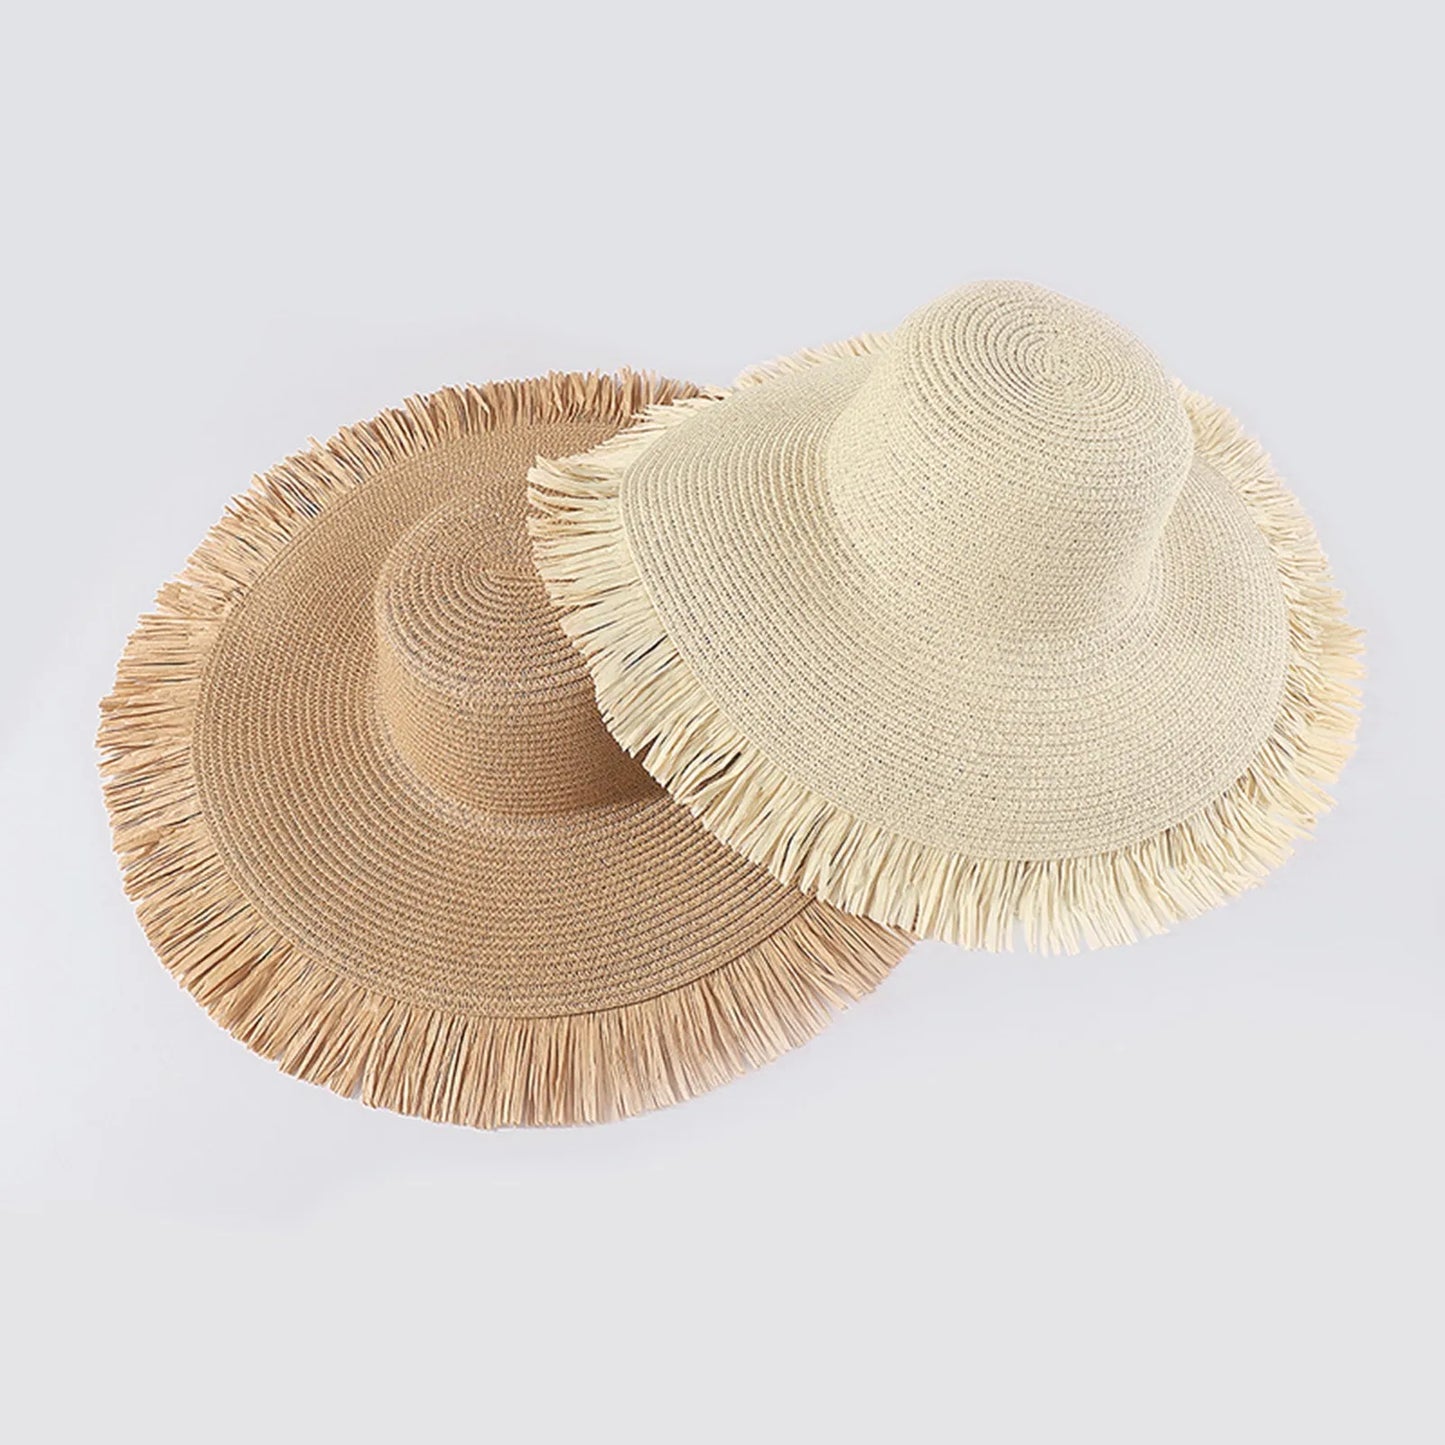 Fashion féminine bohème d'été extérieur grand bord du soleil chapeau de soleil décontracté chapeau plage de plage paille